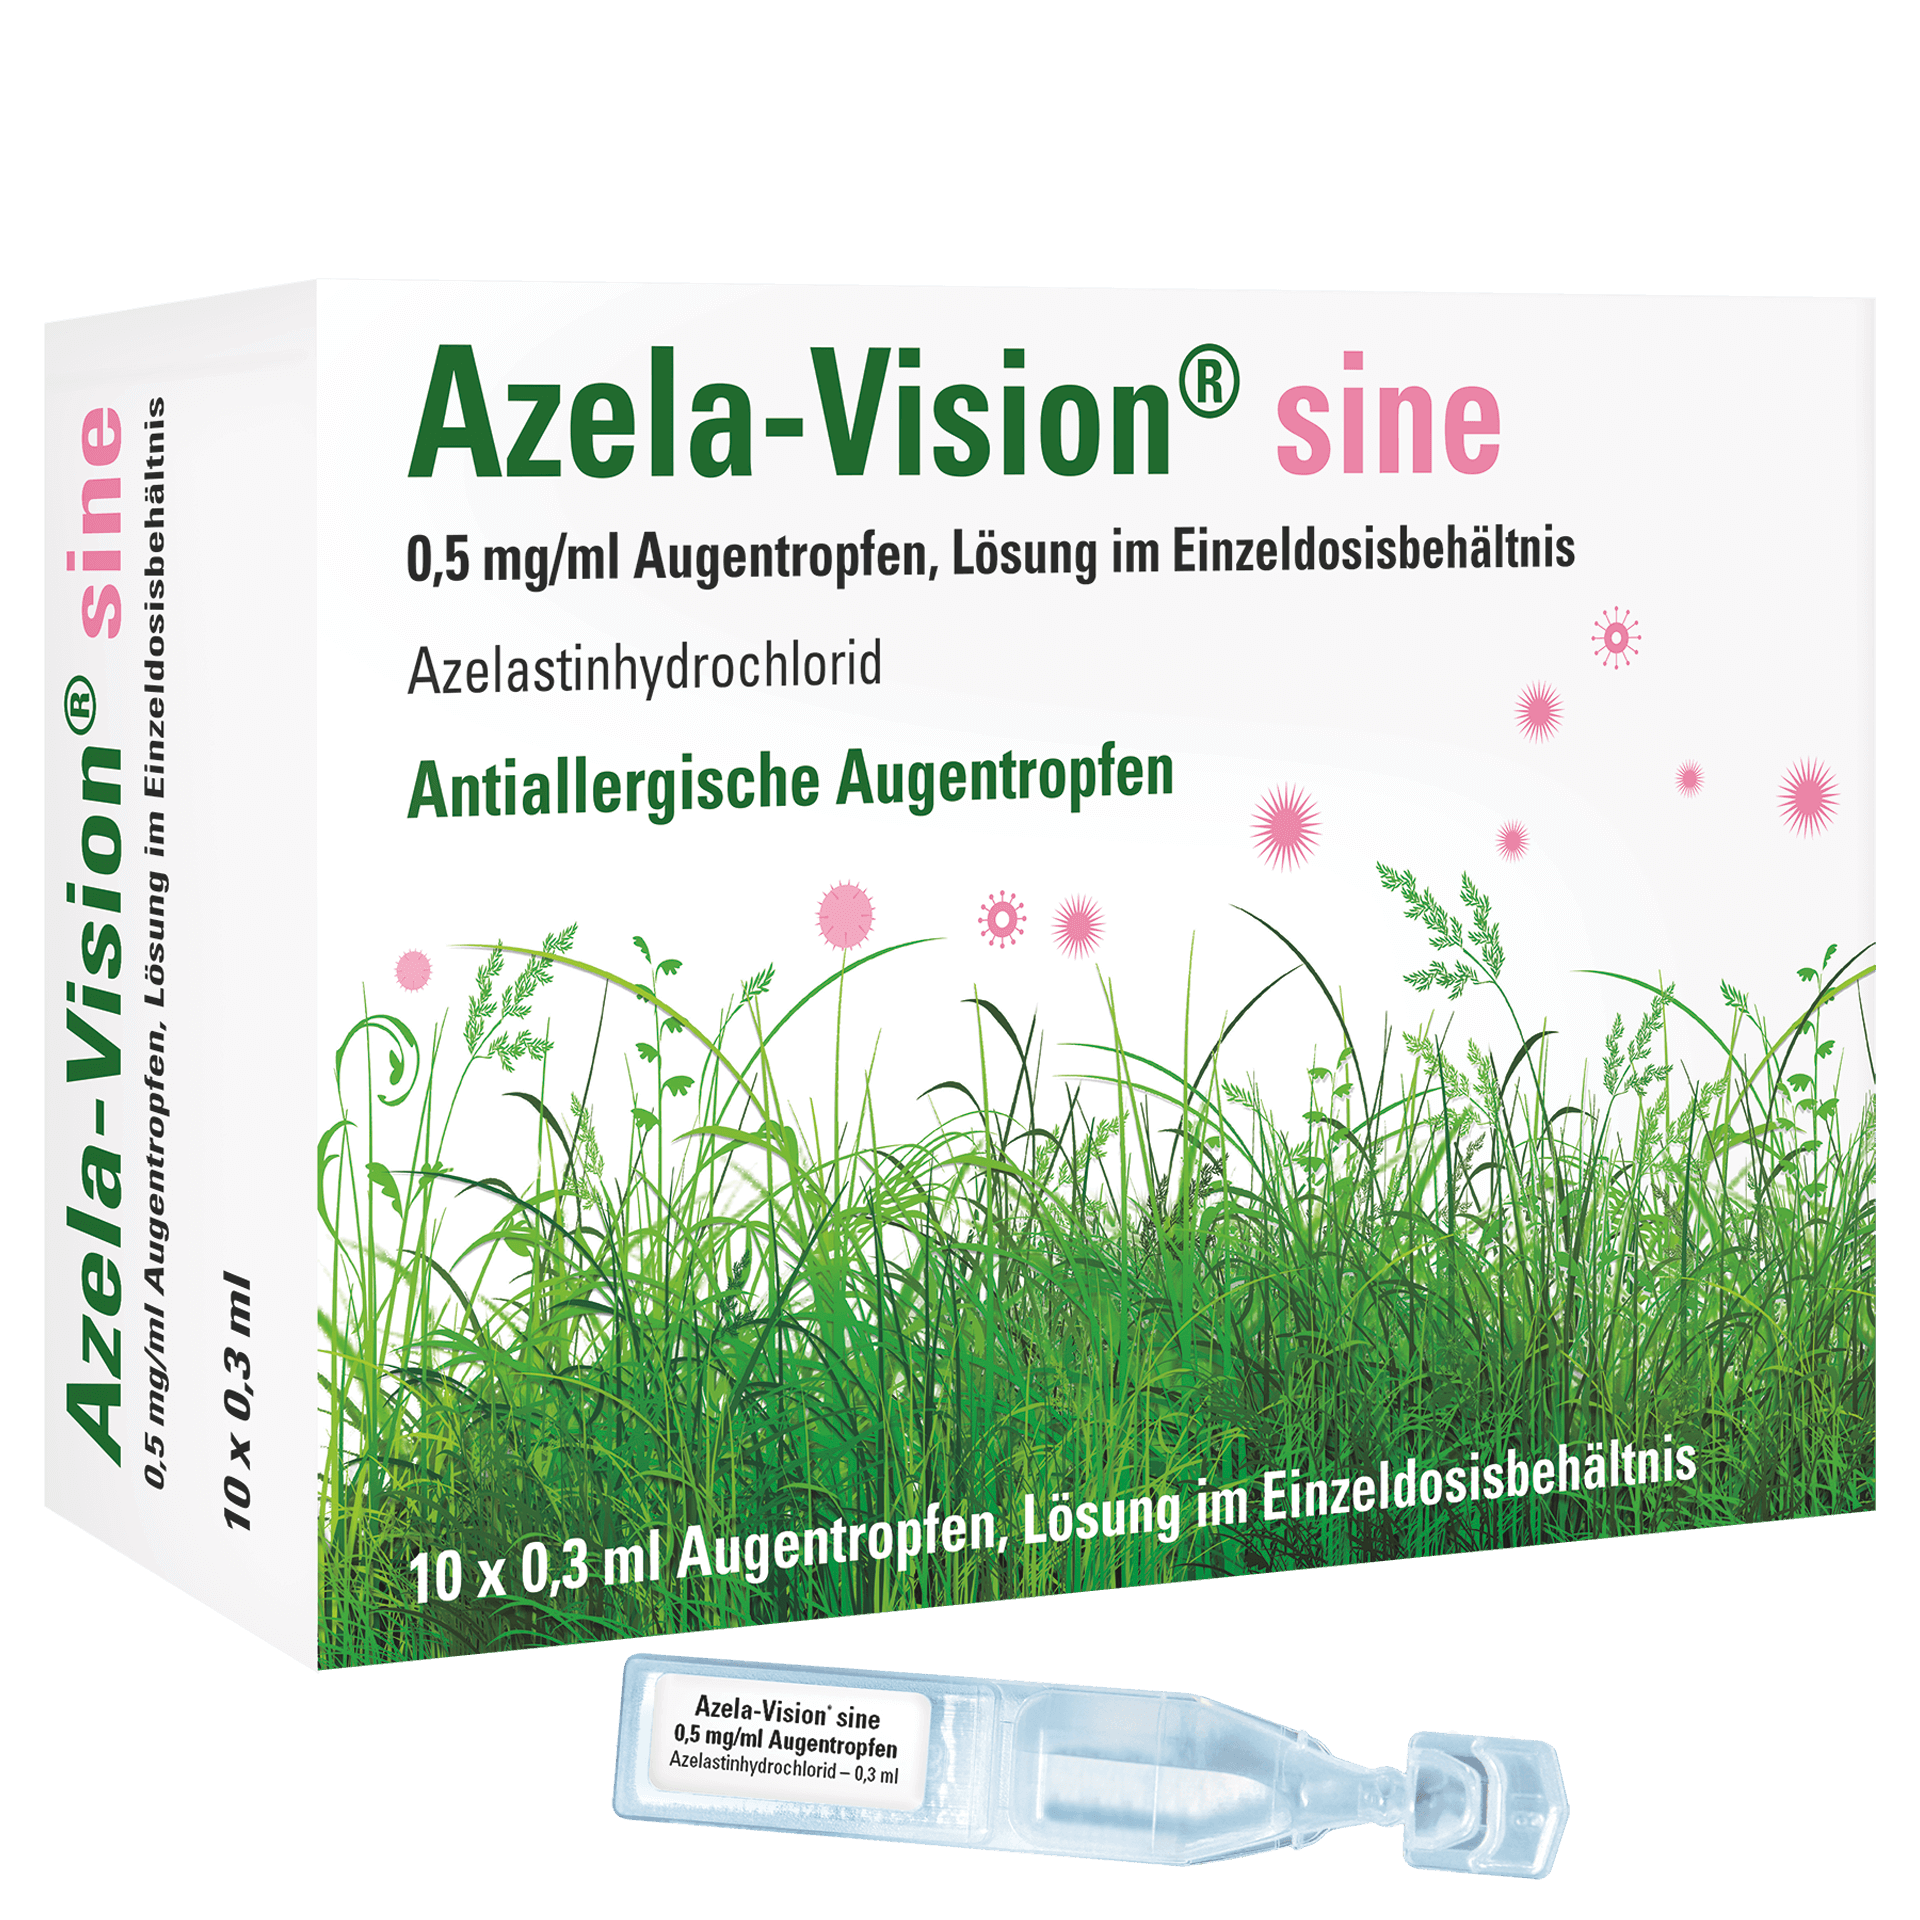 Azela-Vision sine Packshot